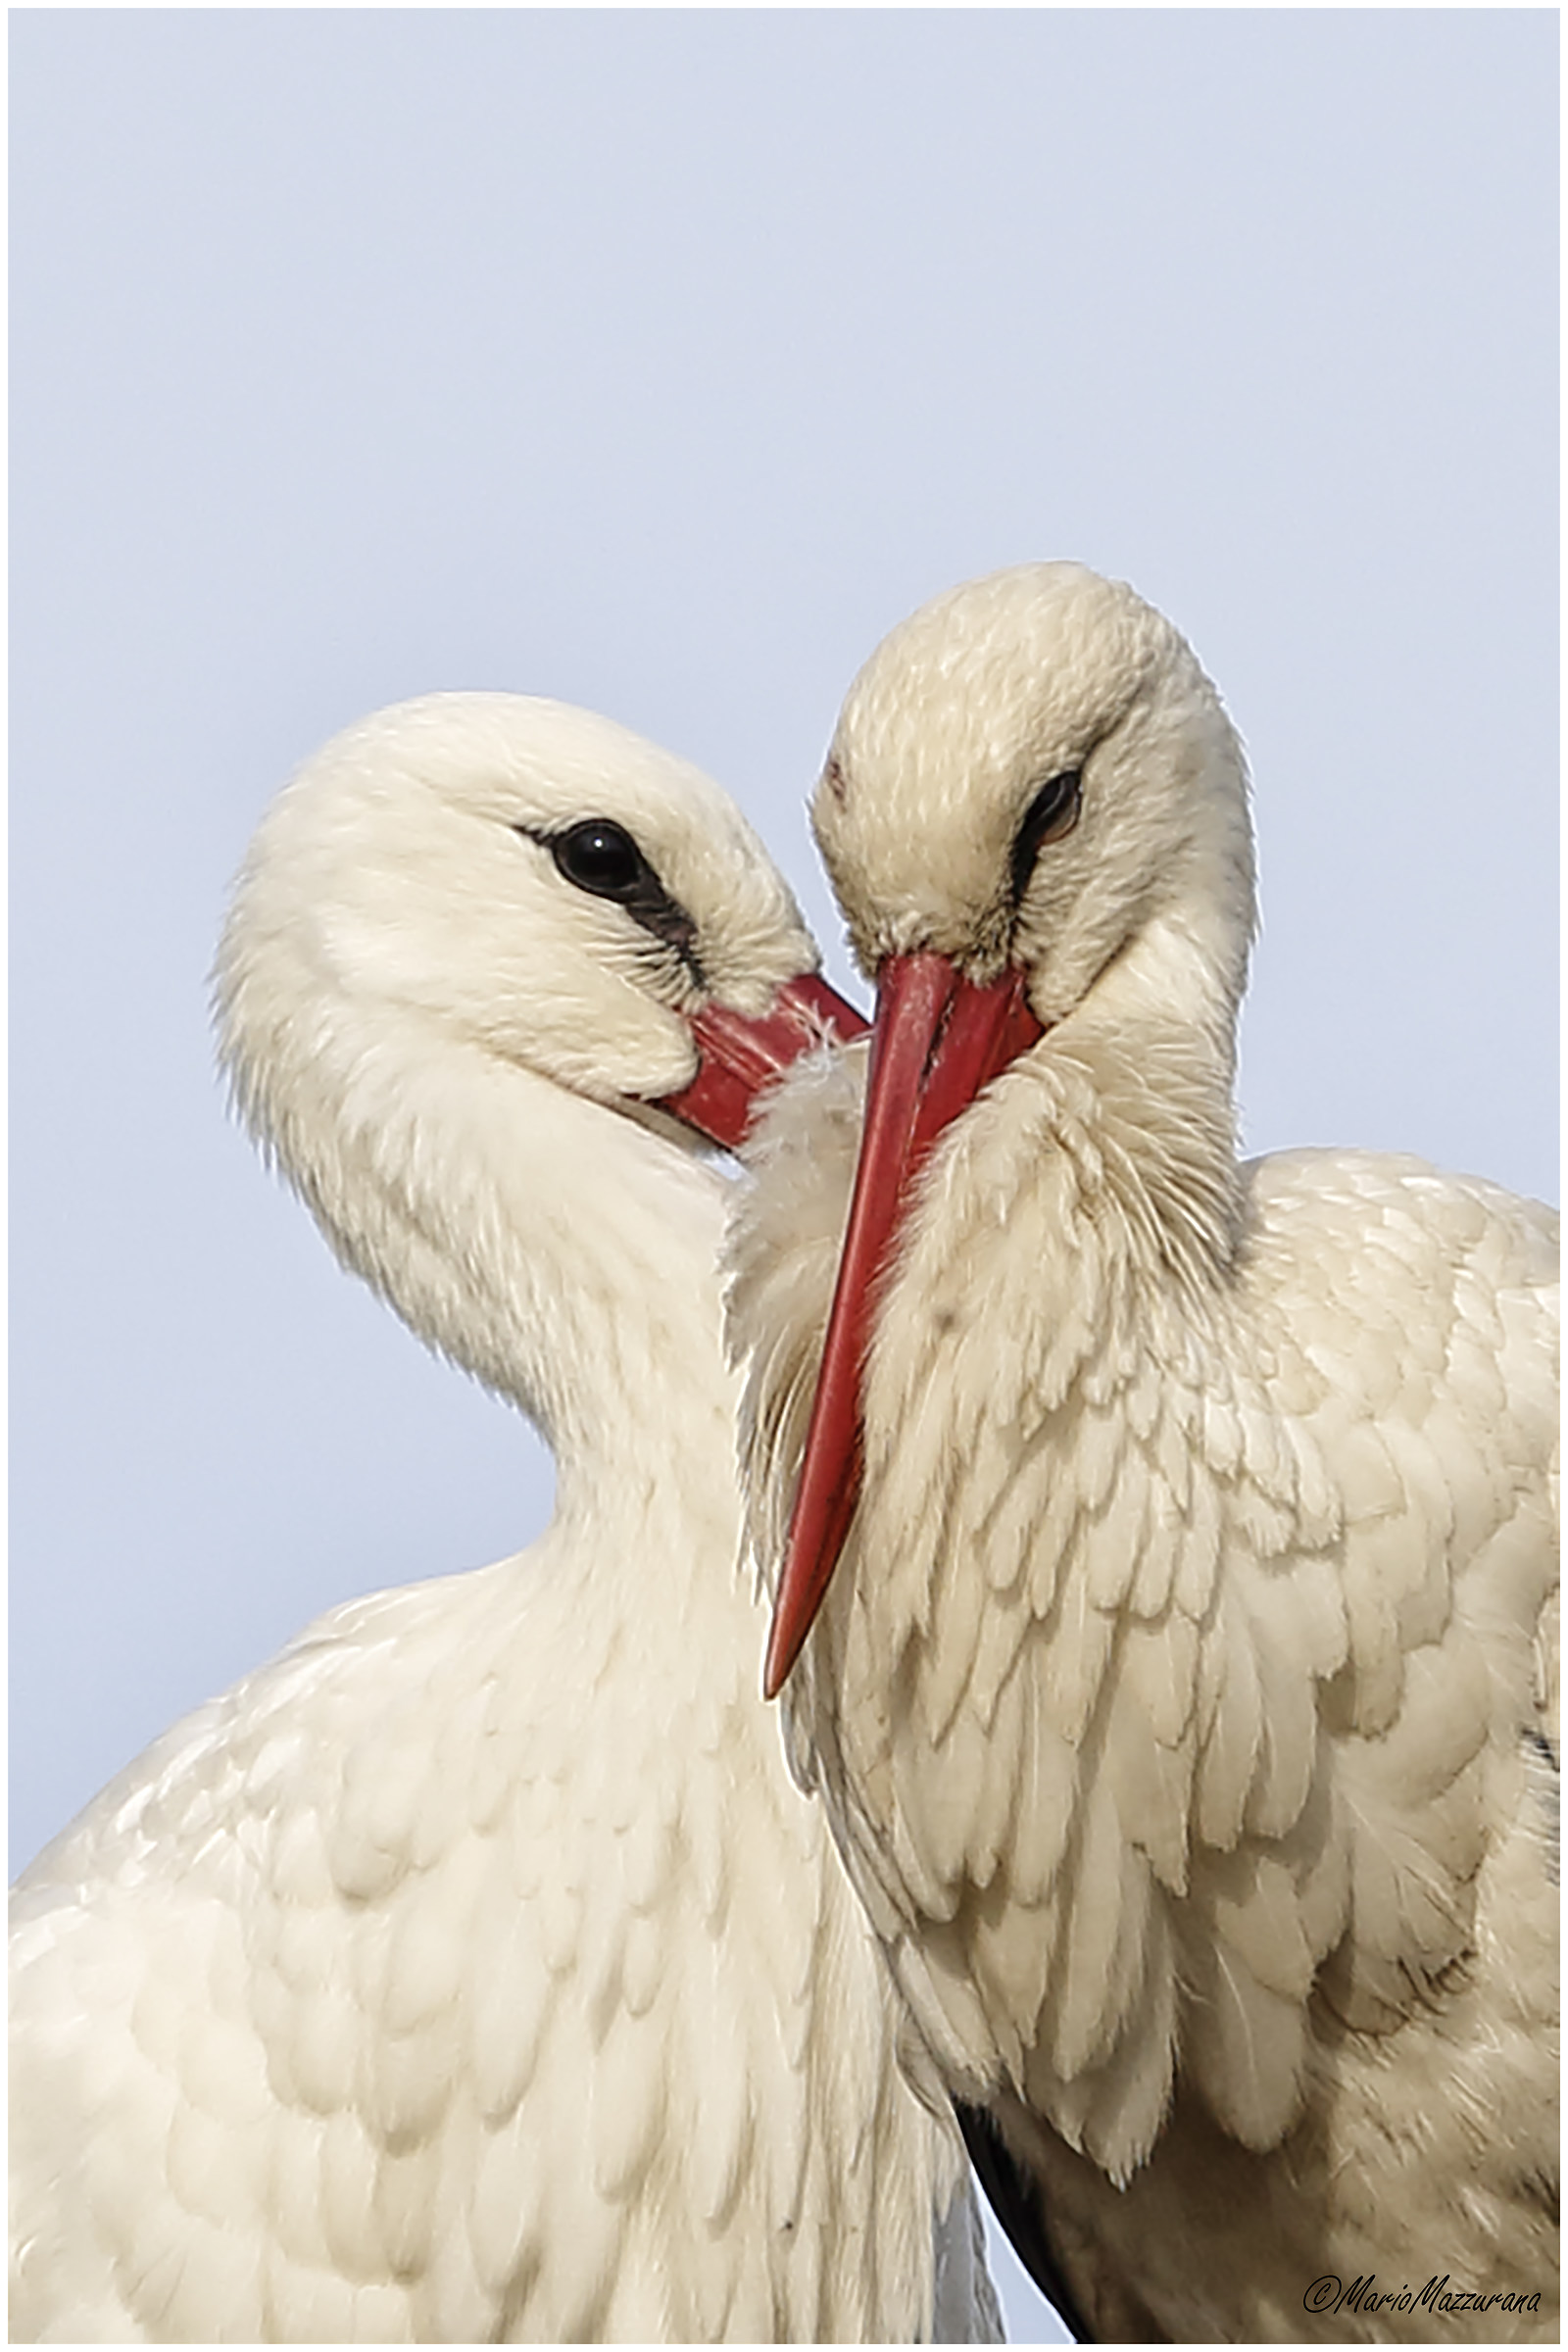 Storks "Love"...